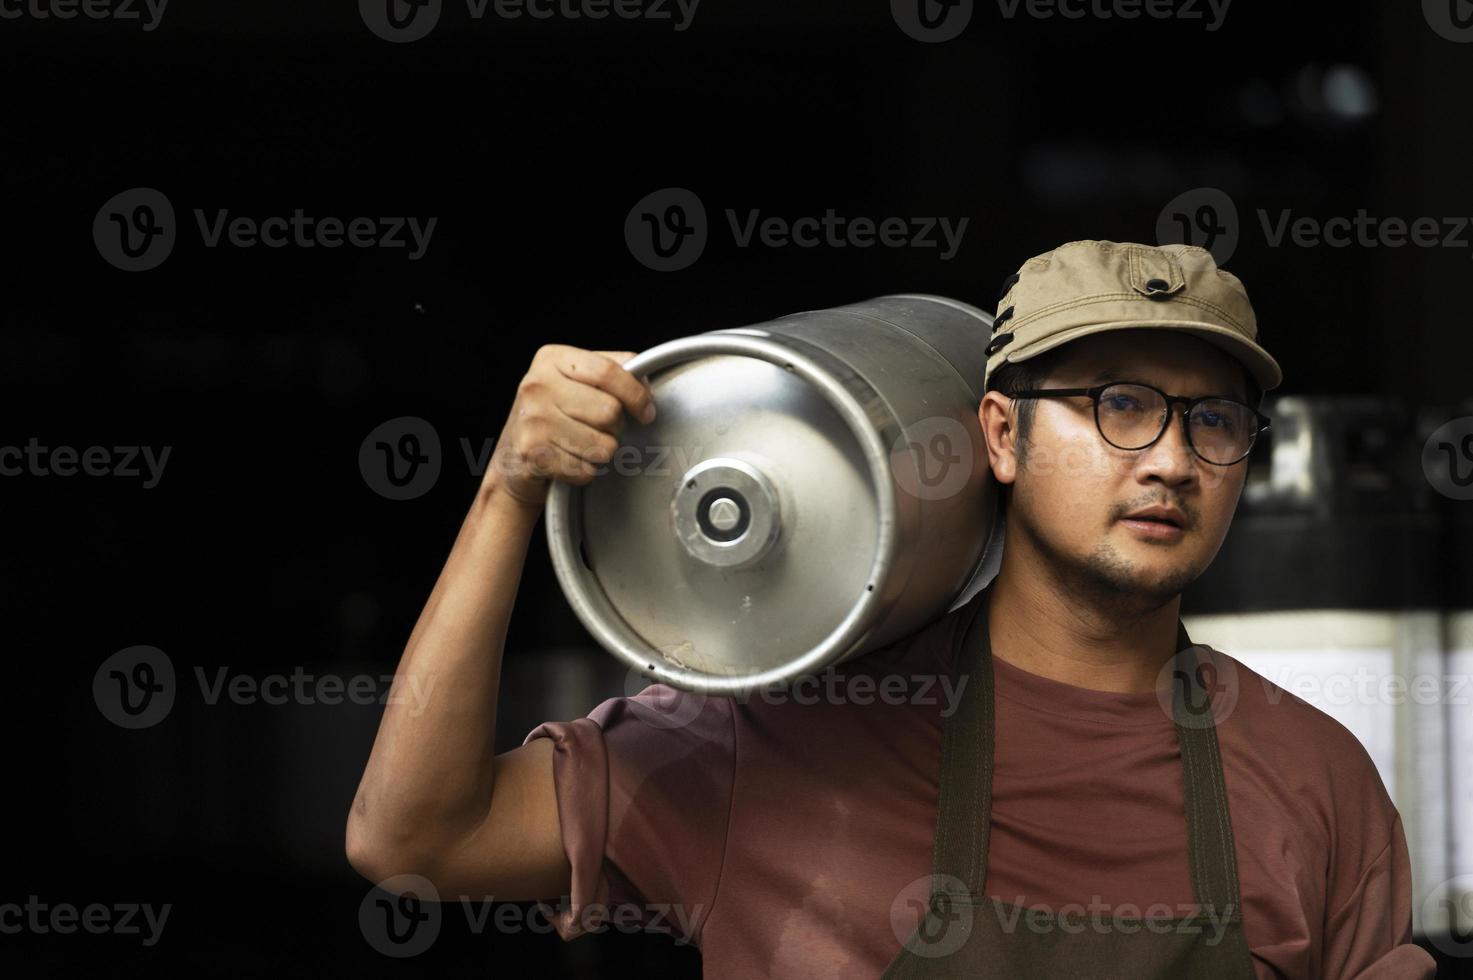 ung man i läderförkläde som håller ölfat på modernt bryggeri, hantverksbryggeriarbetare foto